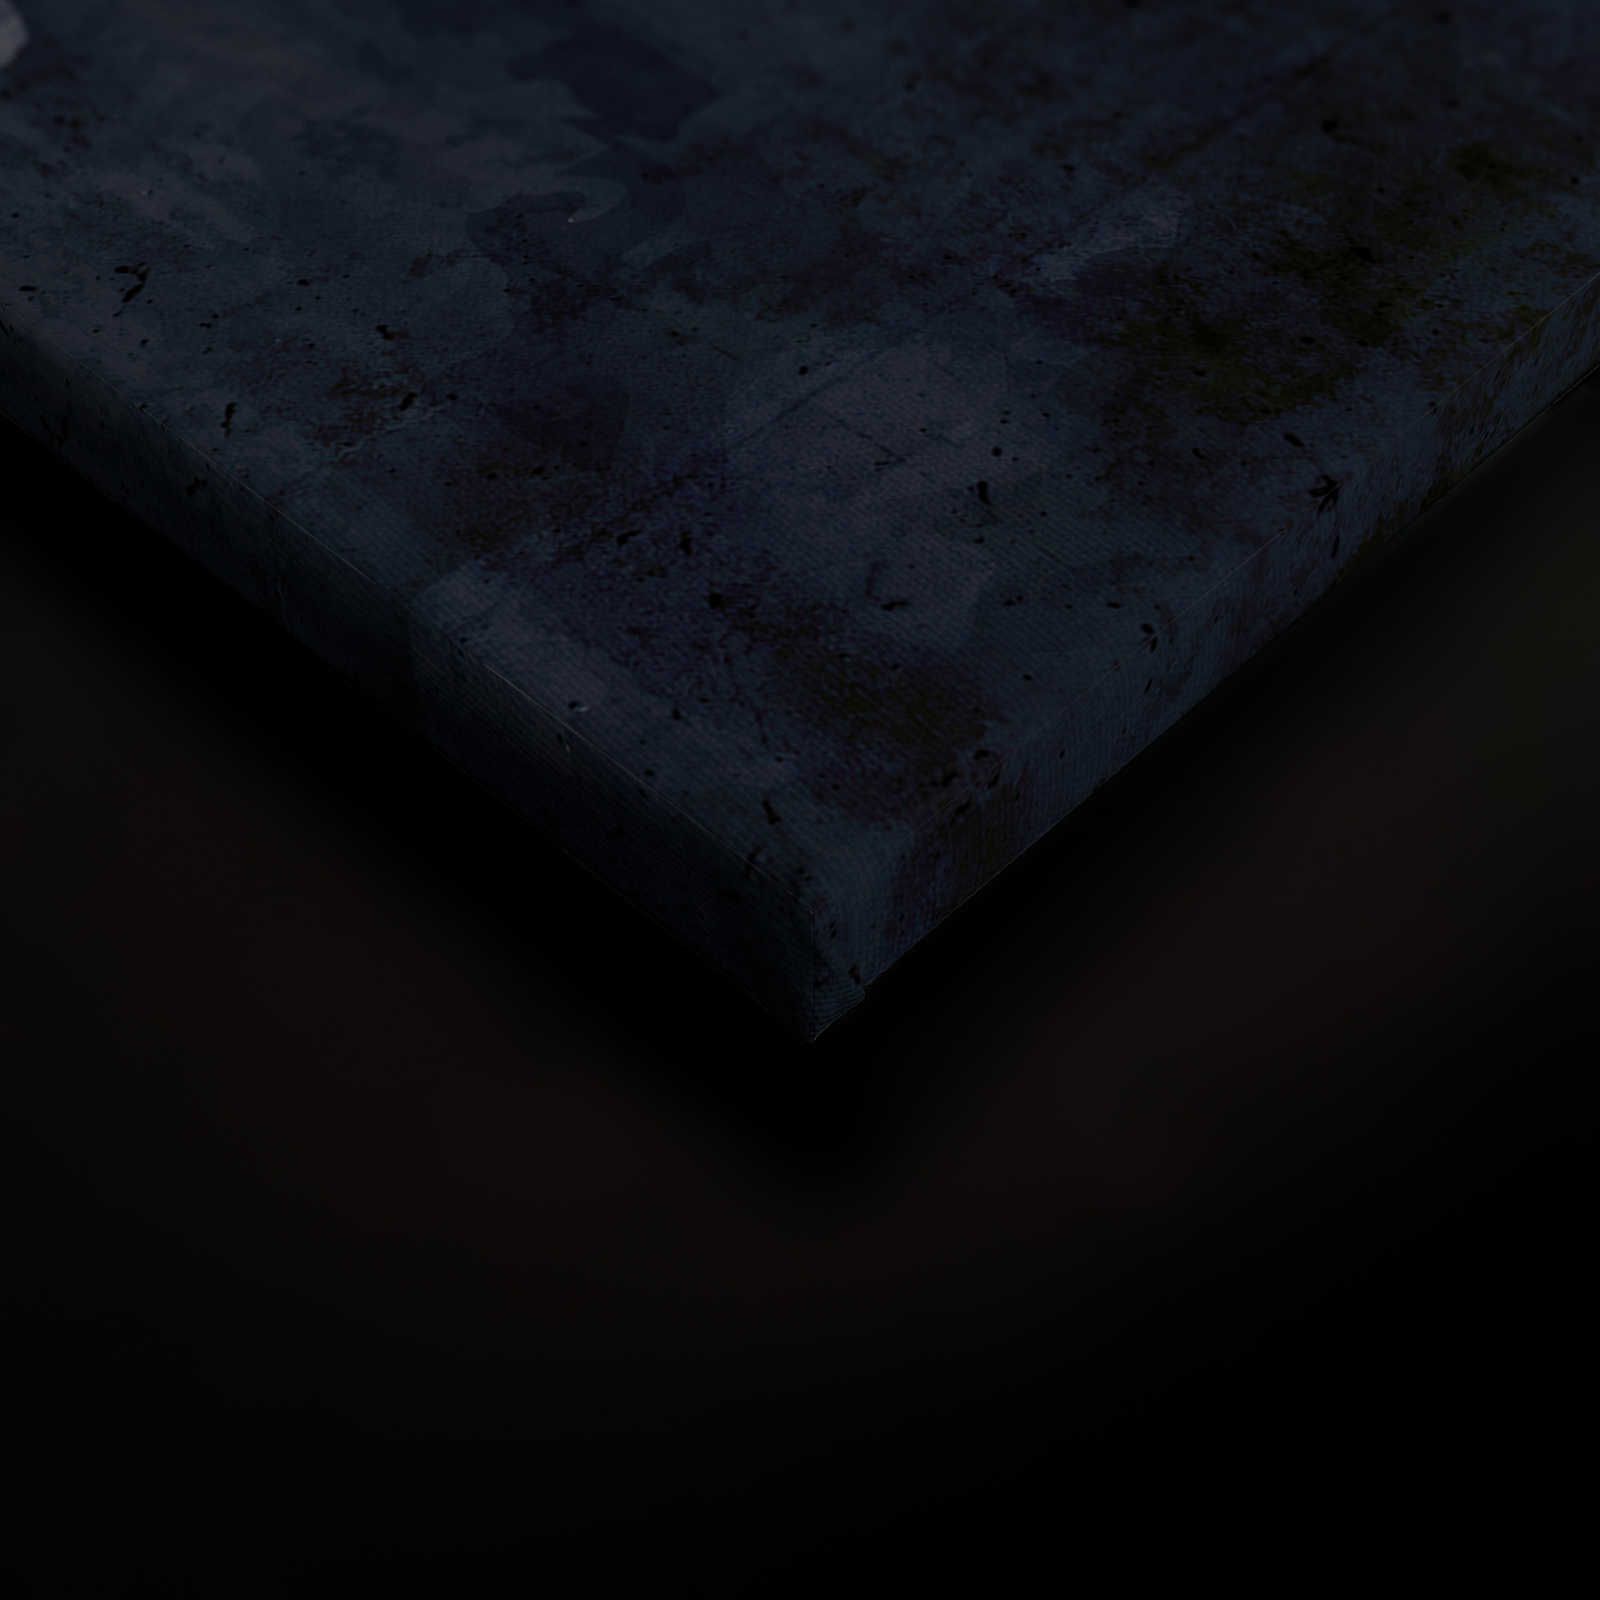             Tableau toile Anthracite aspect béton & argenté design lignes - 1,20 m x 0,80 m
        